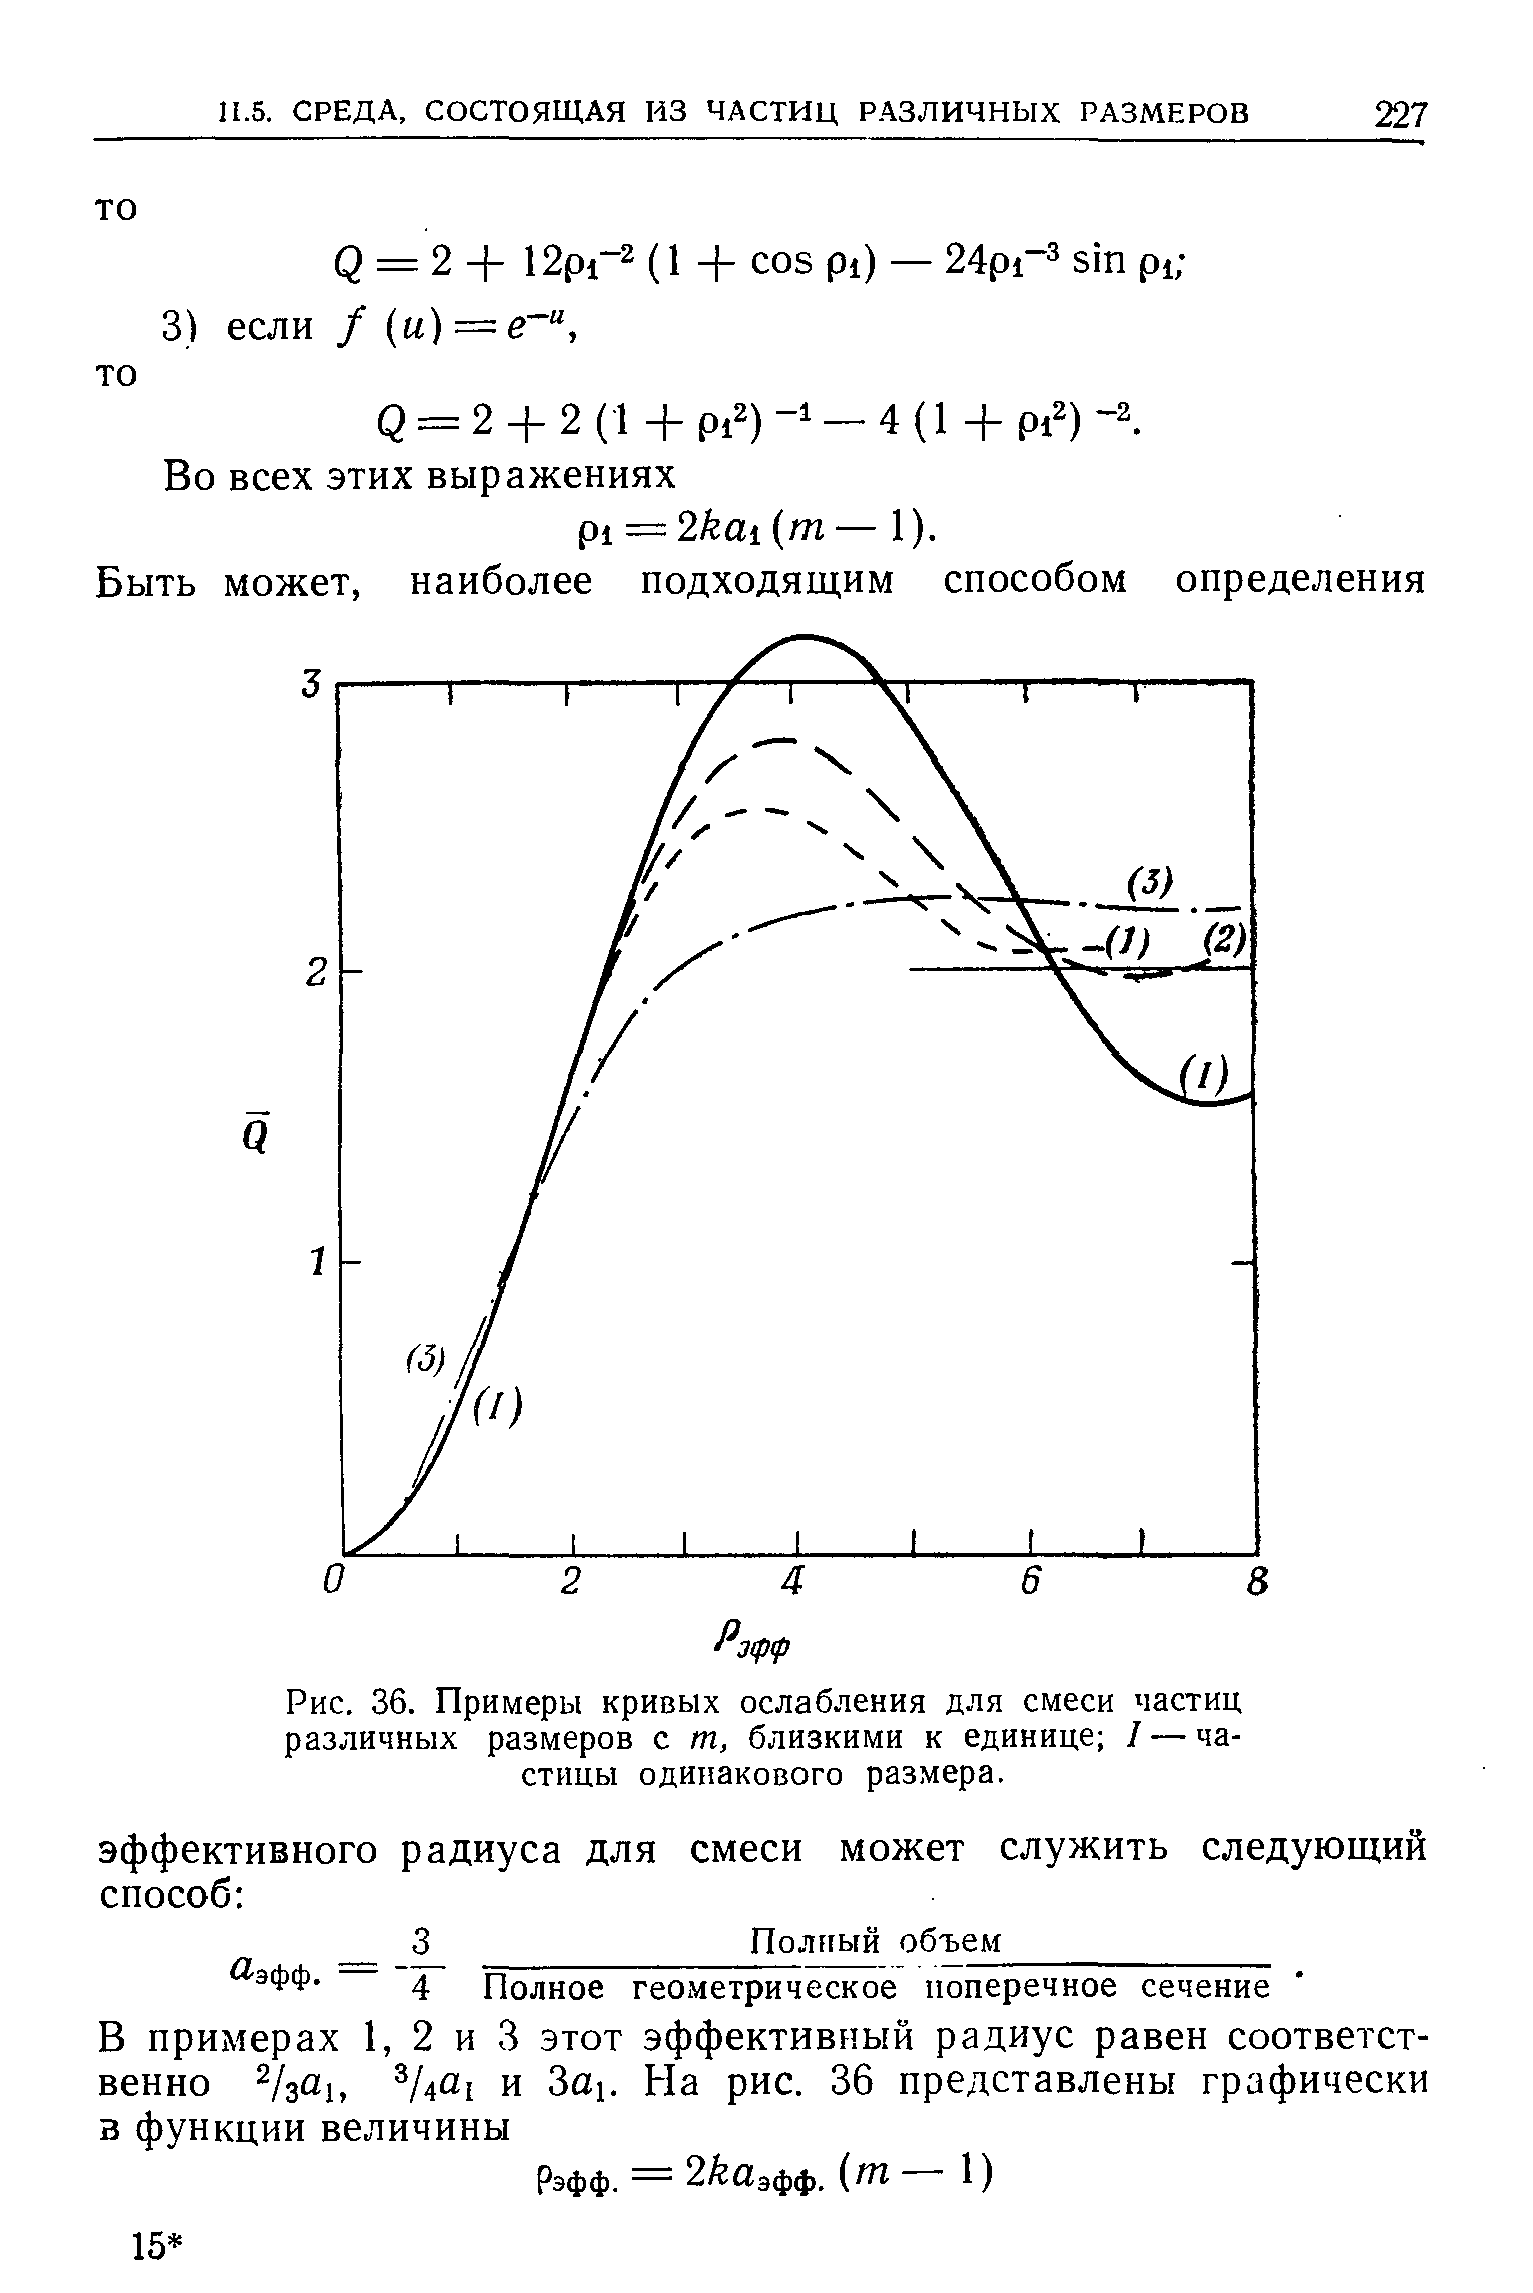 Рис. 36. Примеры кривых ослабления для смеси частиц различных размеров с т, близкими к единице I — частицы одинакового размера.
